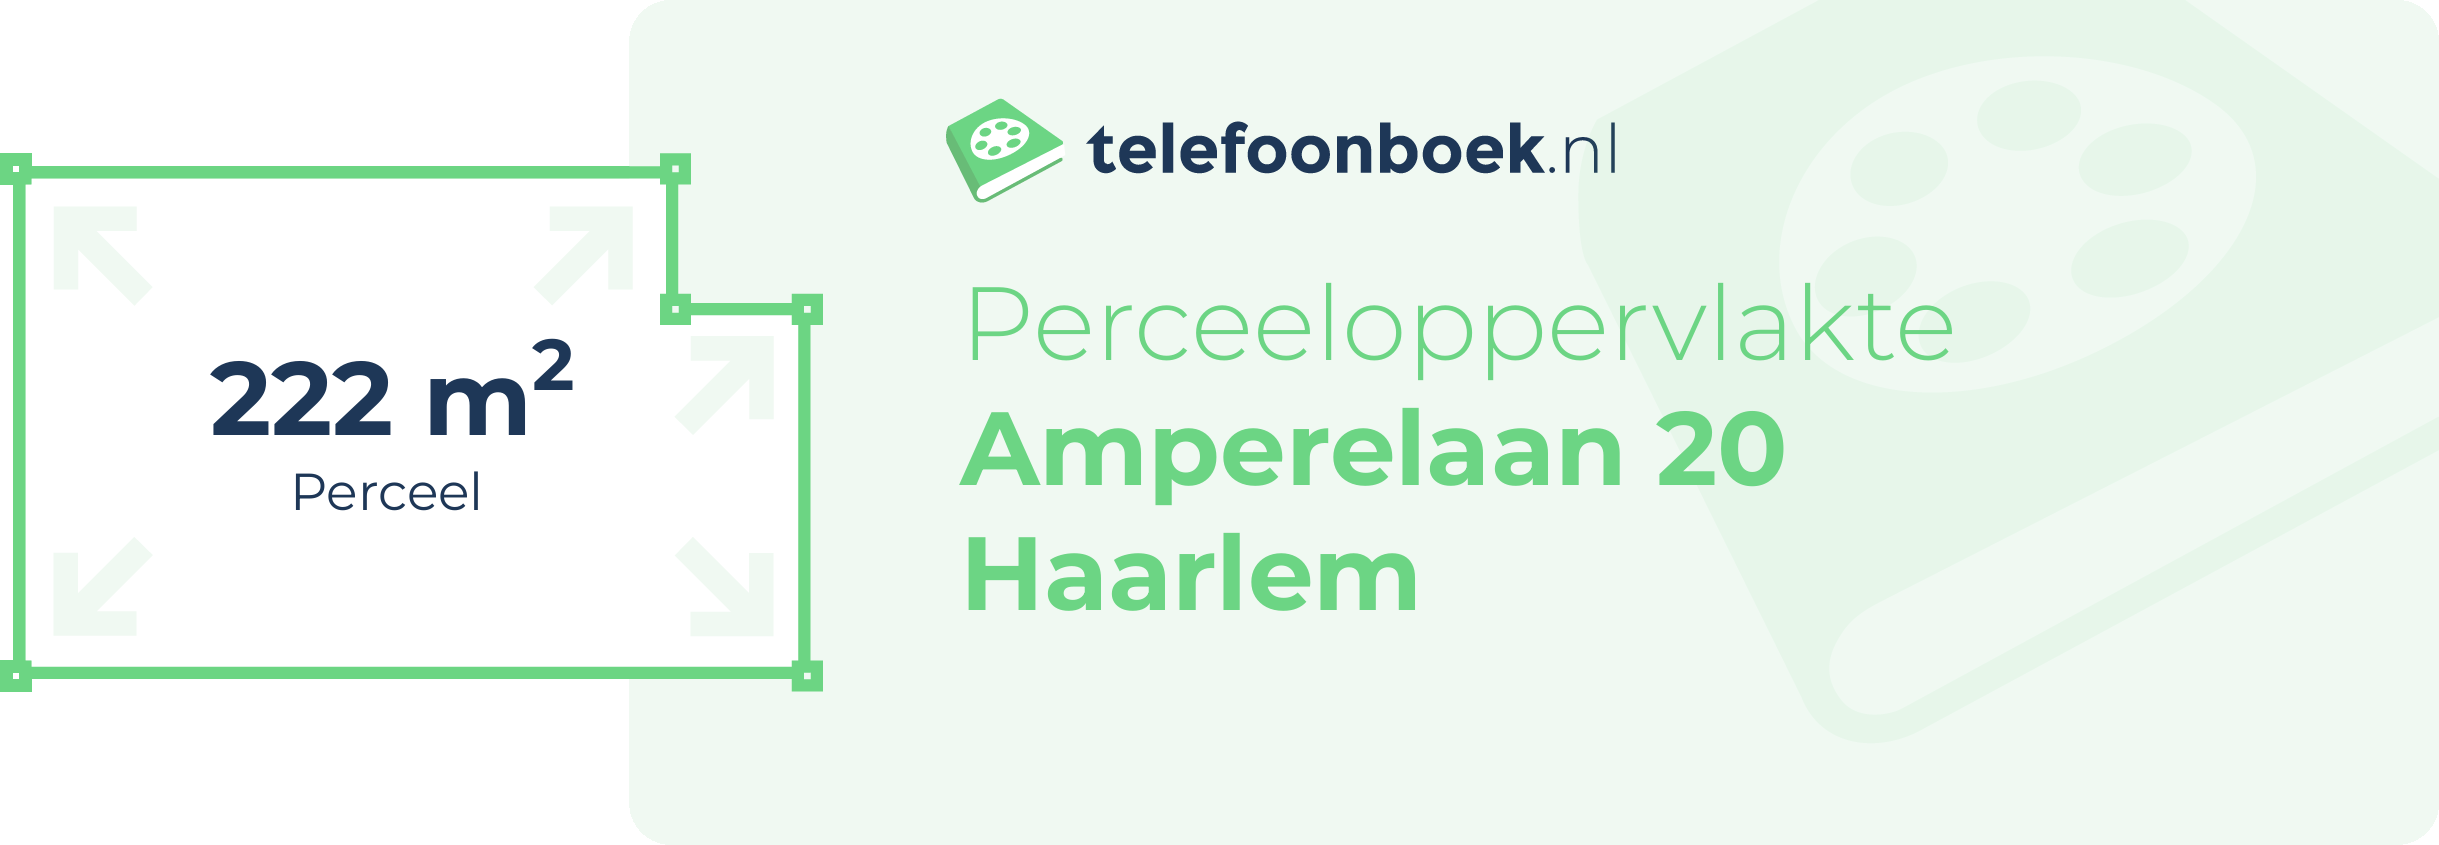 Perceeloppervlakte Amperelaan 20 Haarlem